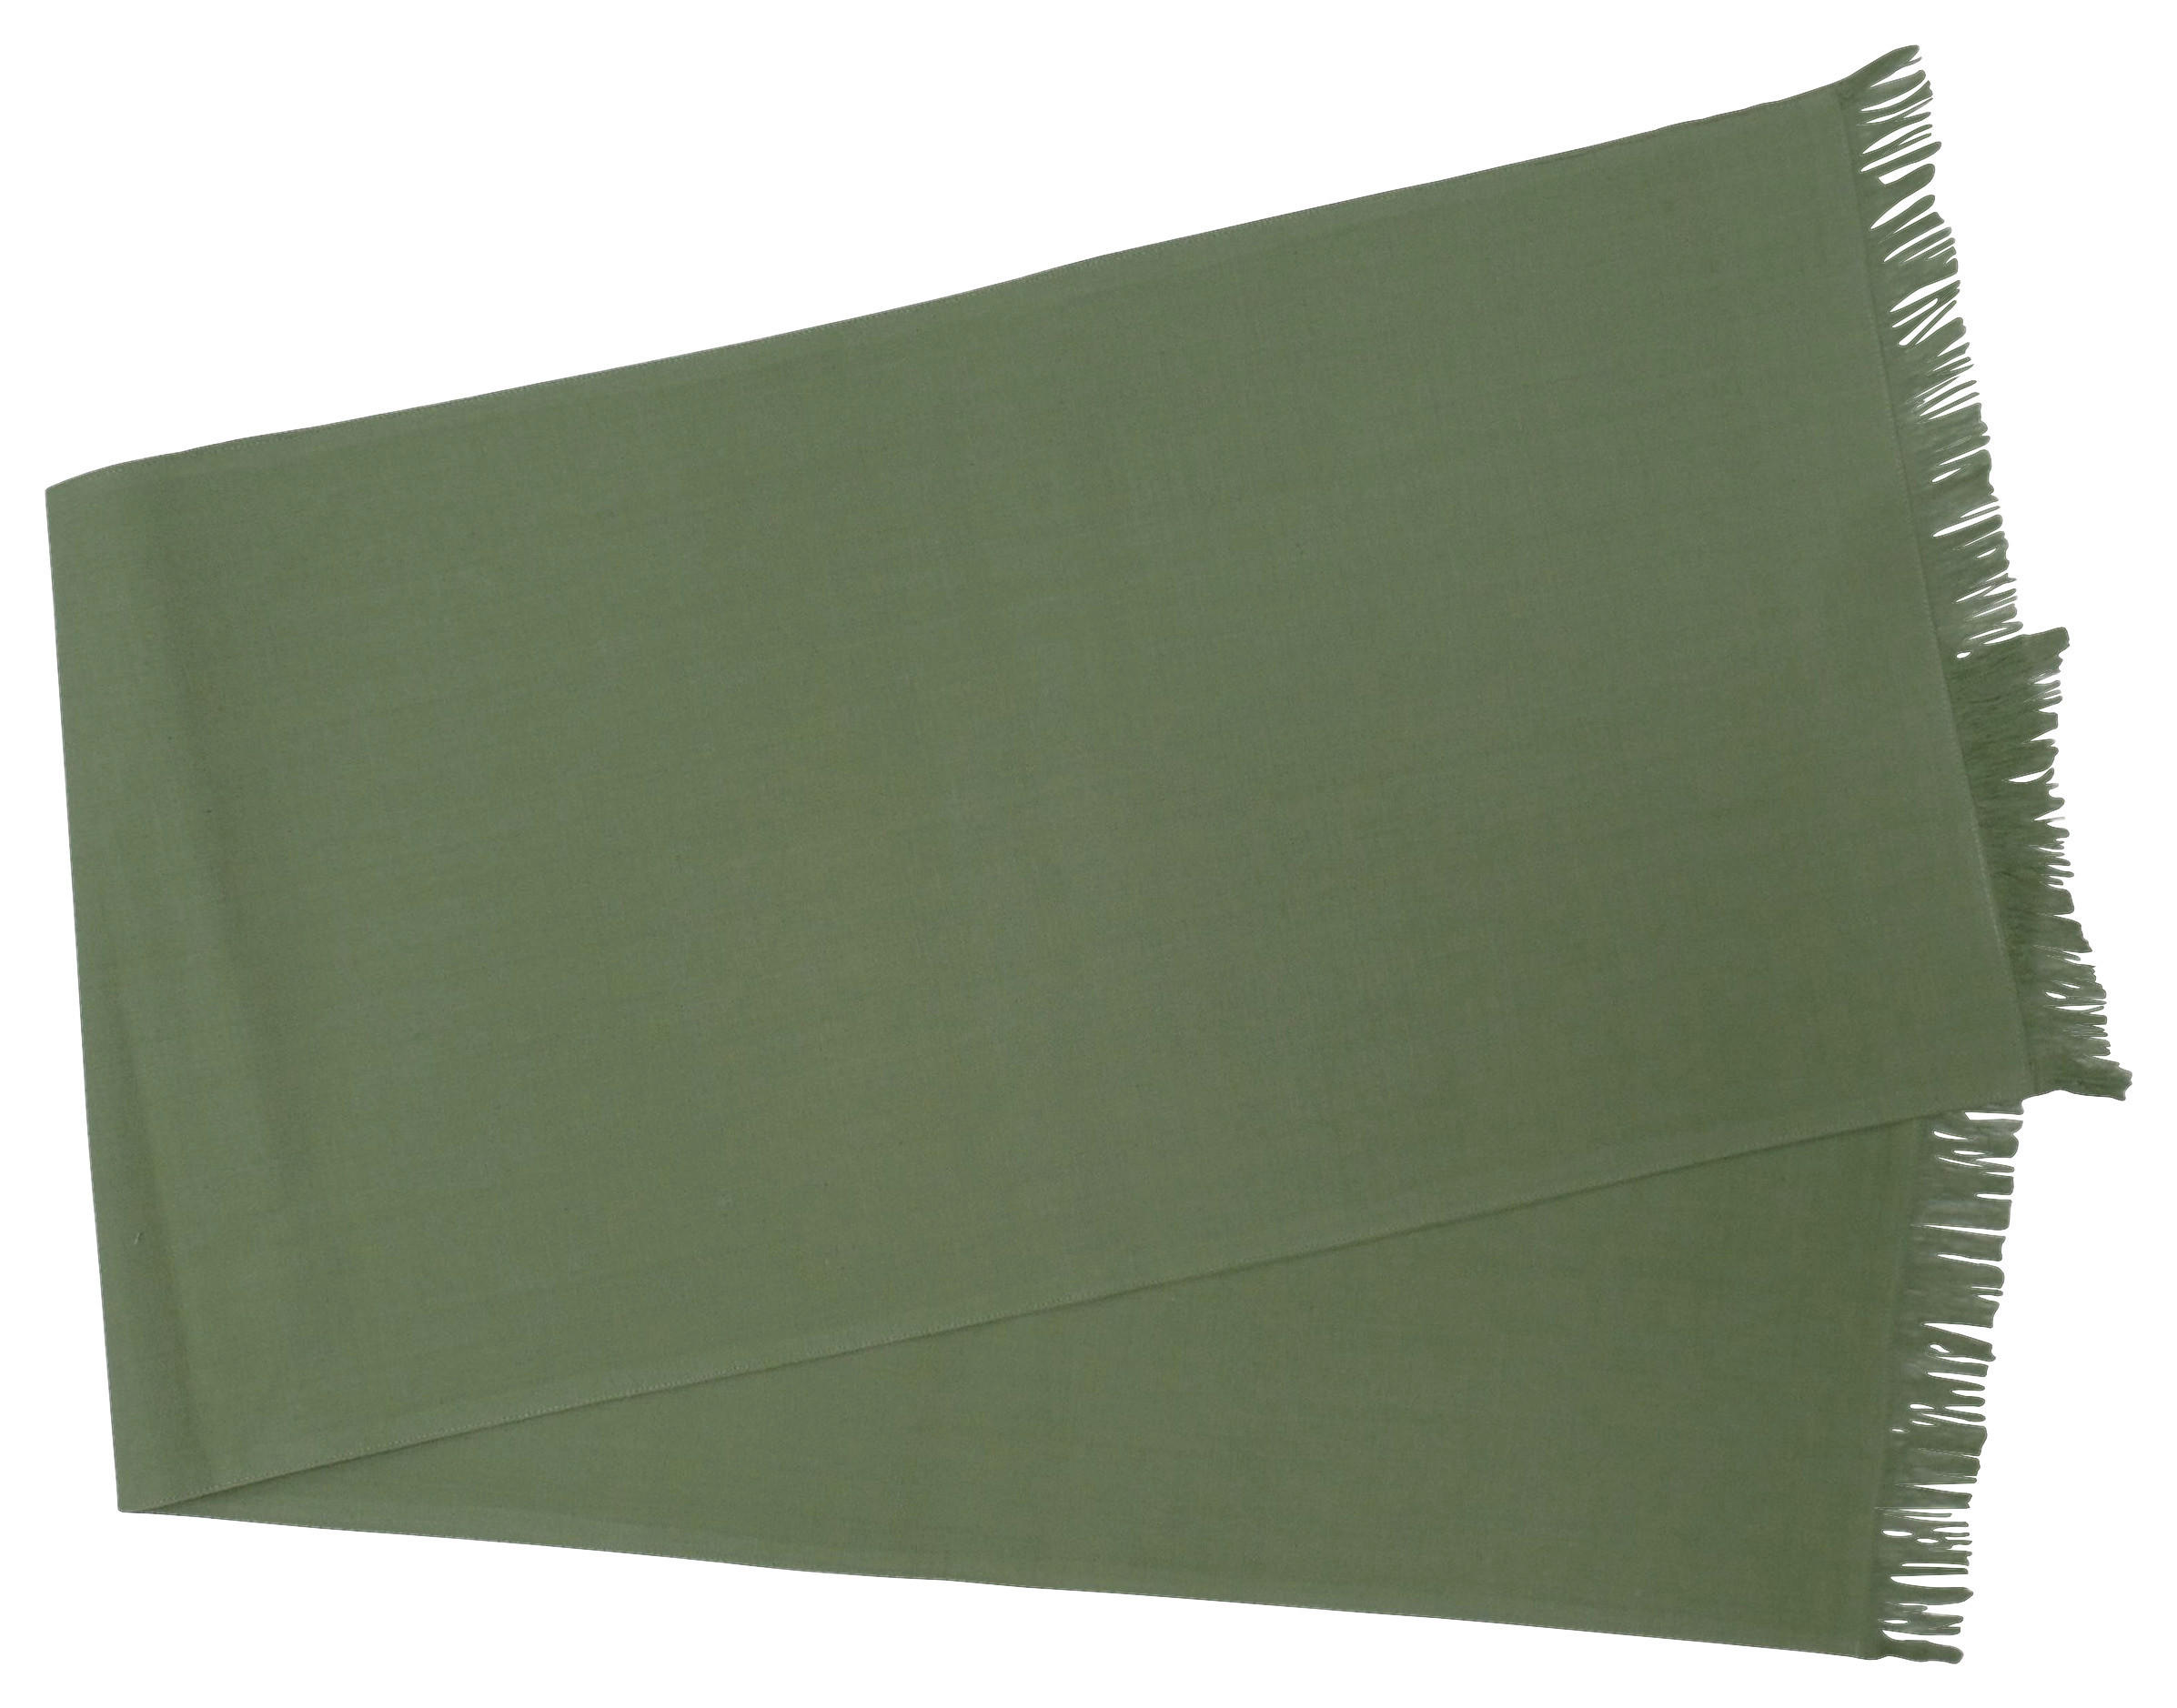 TISCHLÄUFER 40/150 cm   - Grün, Basics, Textil (40/150cm)